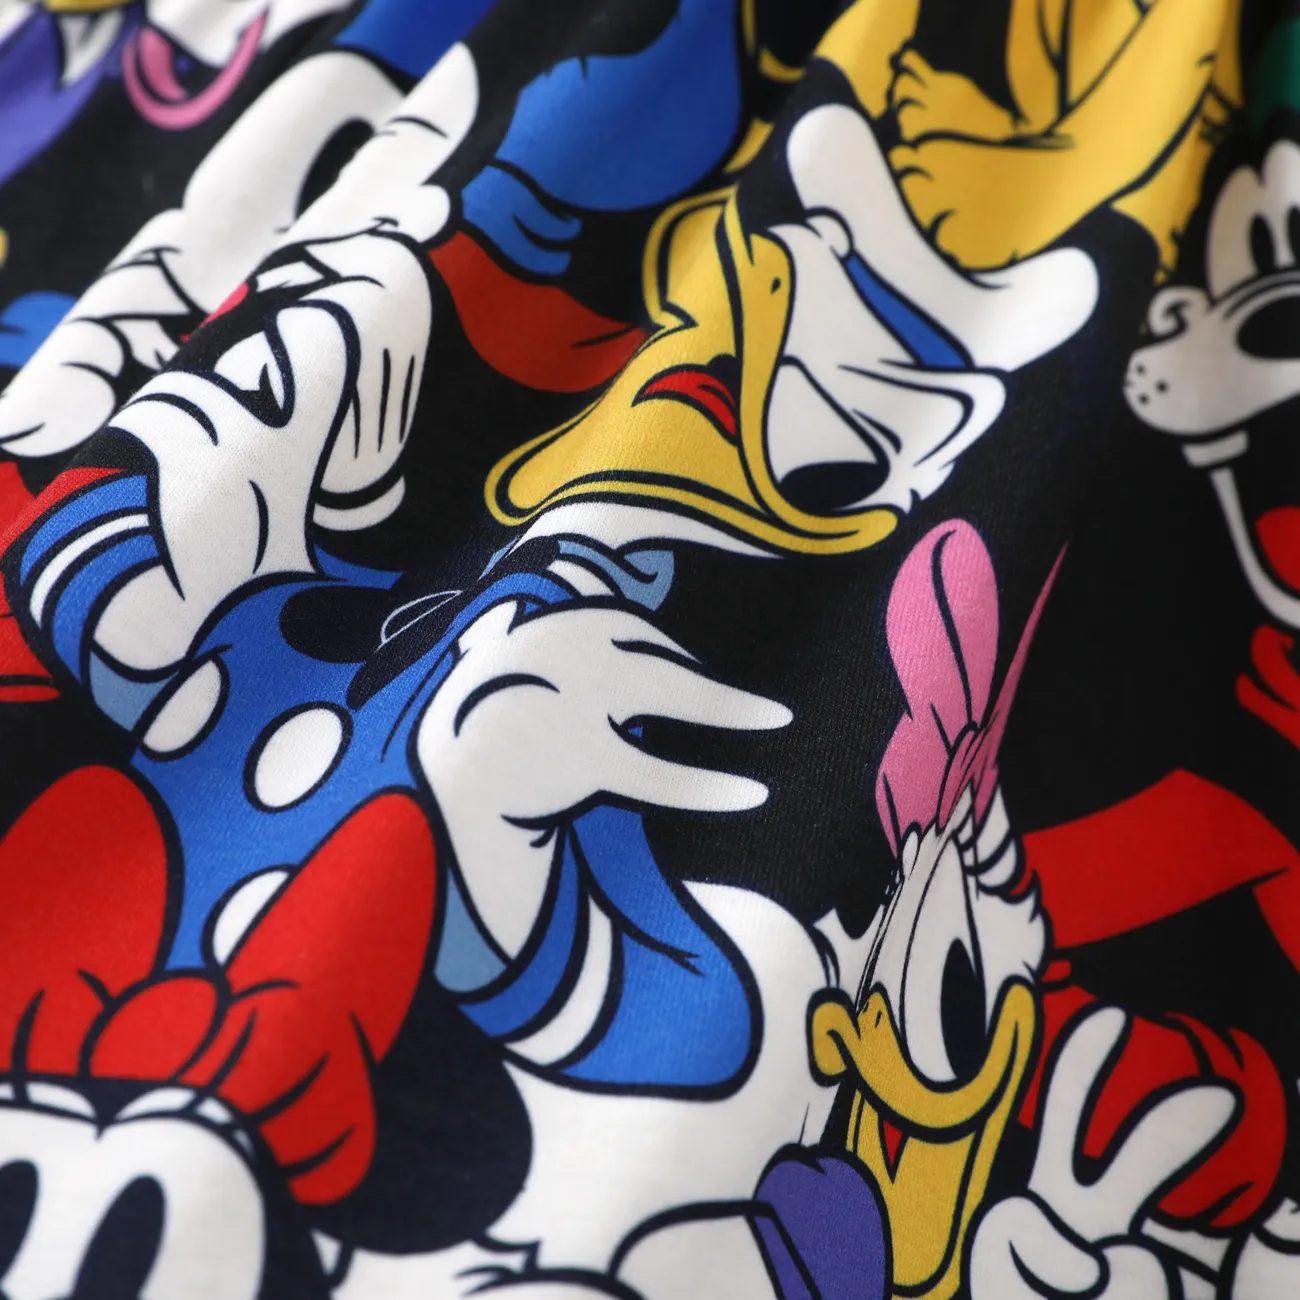 Disney Mickey and Friends 1pc Siblings Naia™ Character All-over Graffiti Print Dress/T-shirt Black big image 1